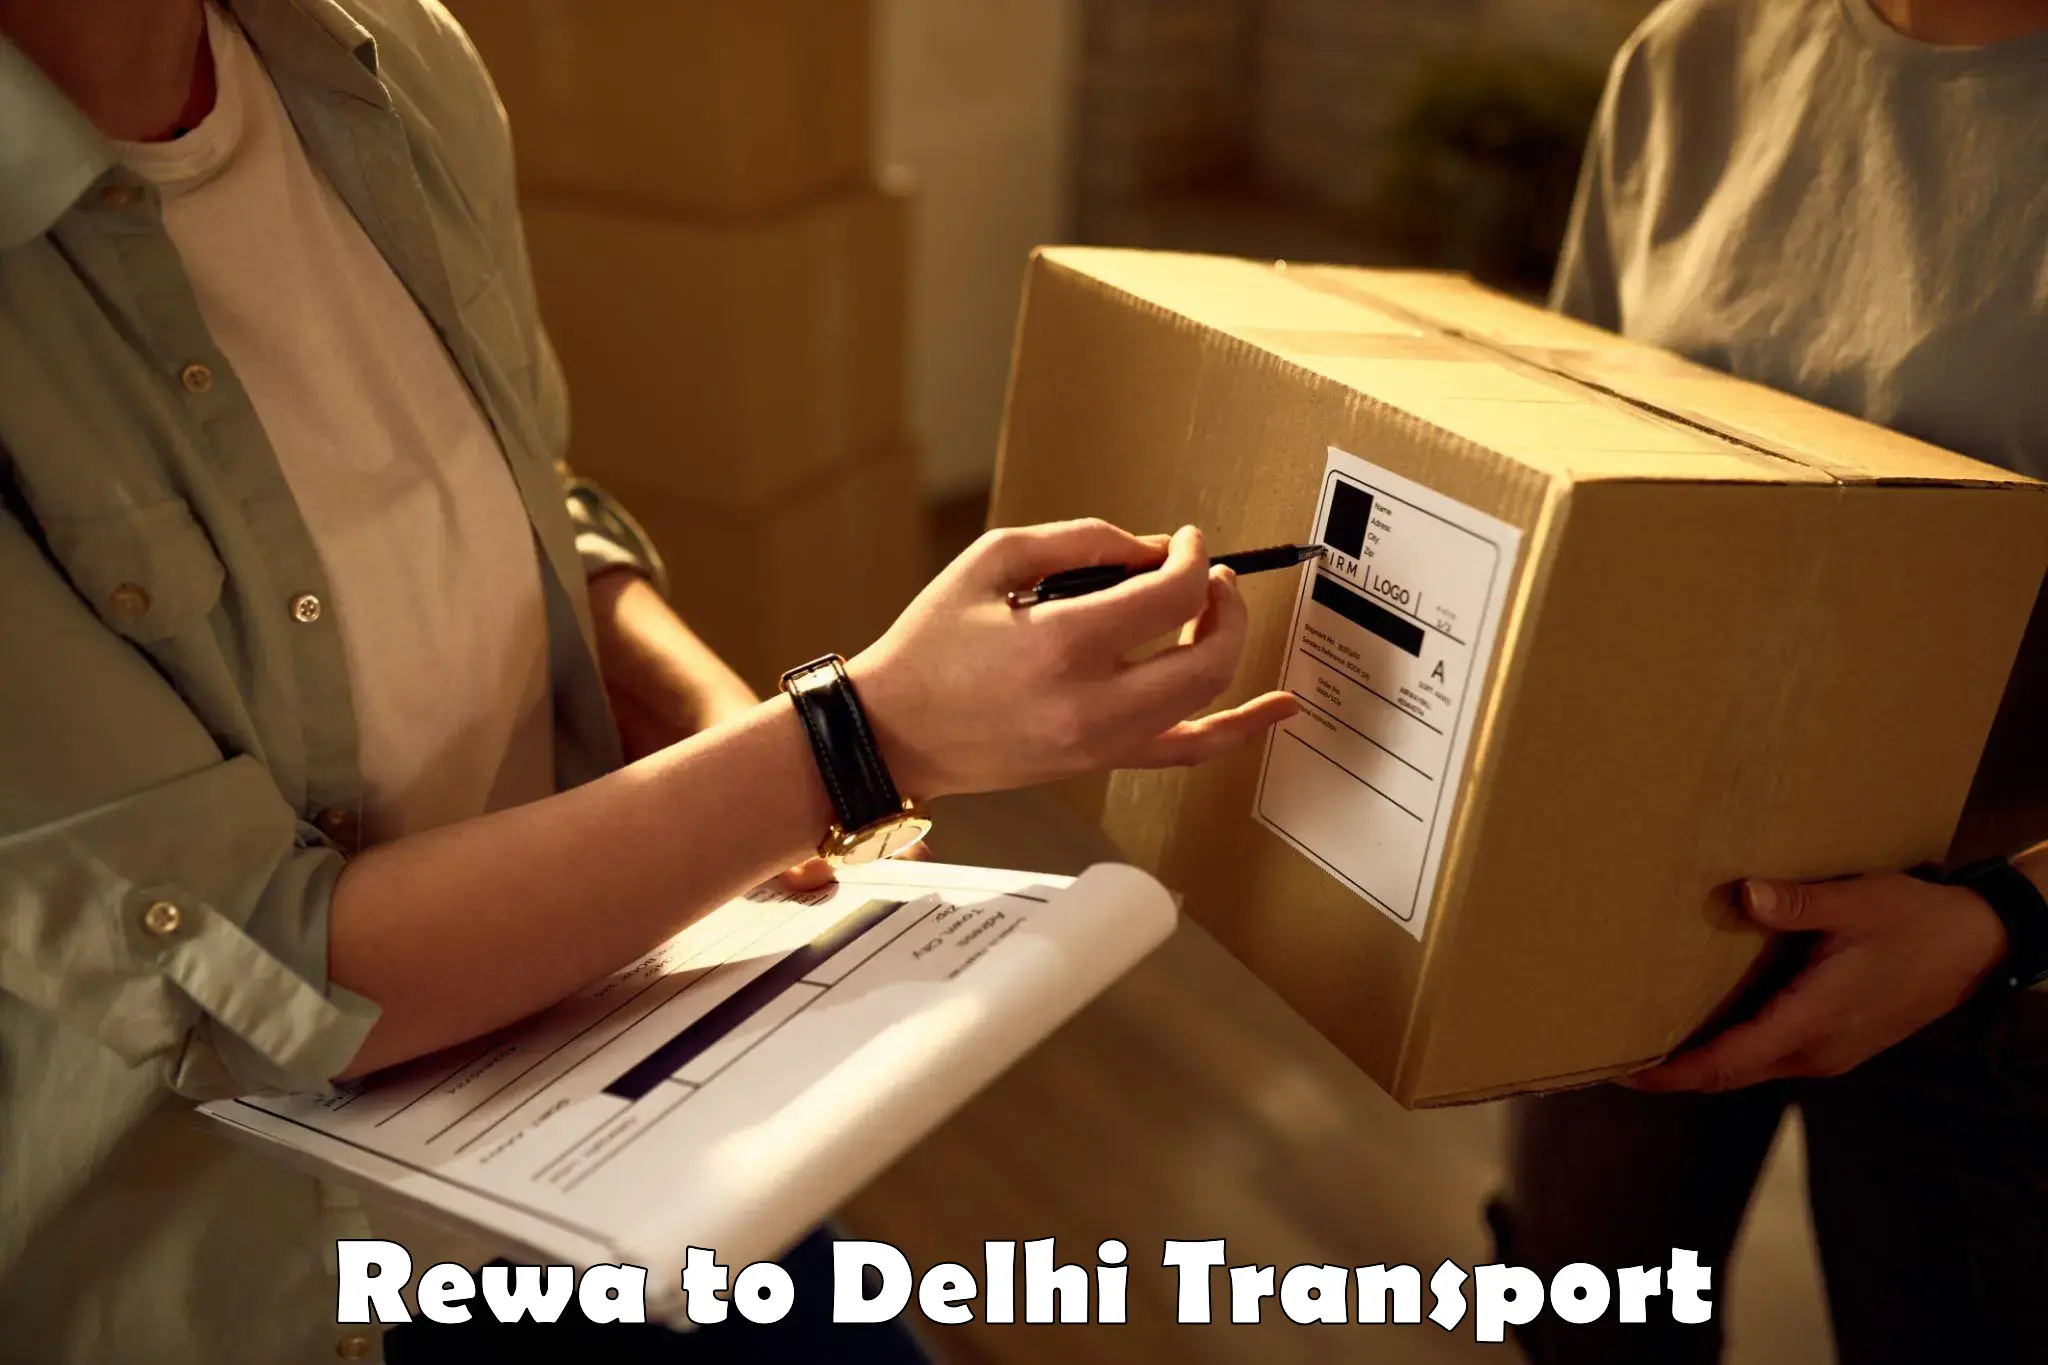 Air freight transport services Rewa to IIT Delhi